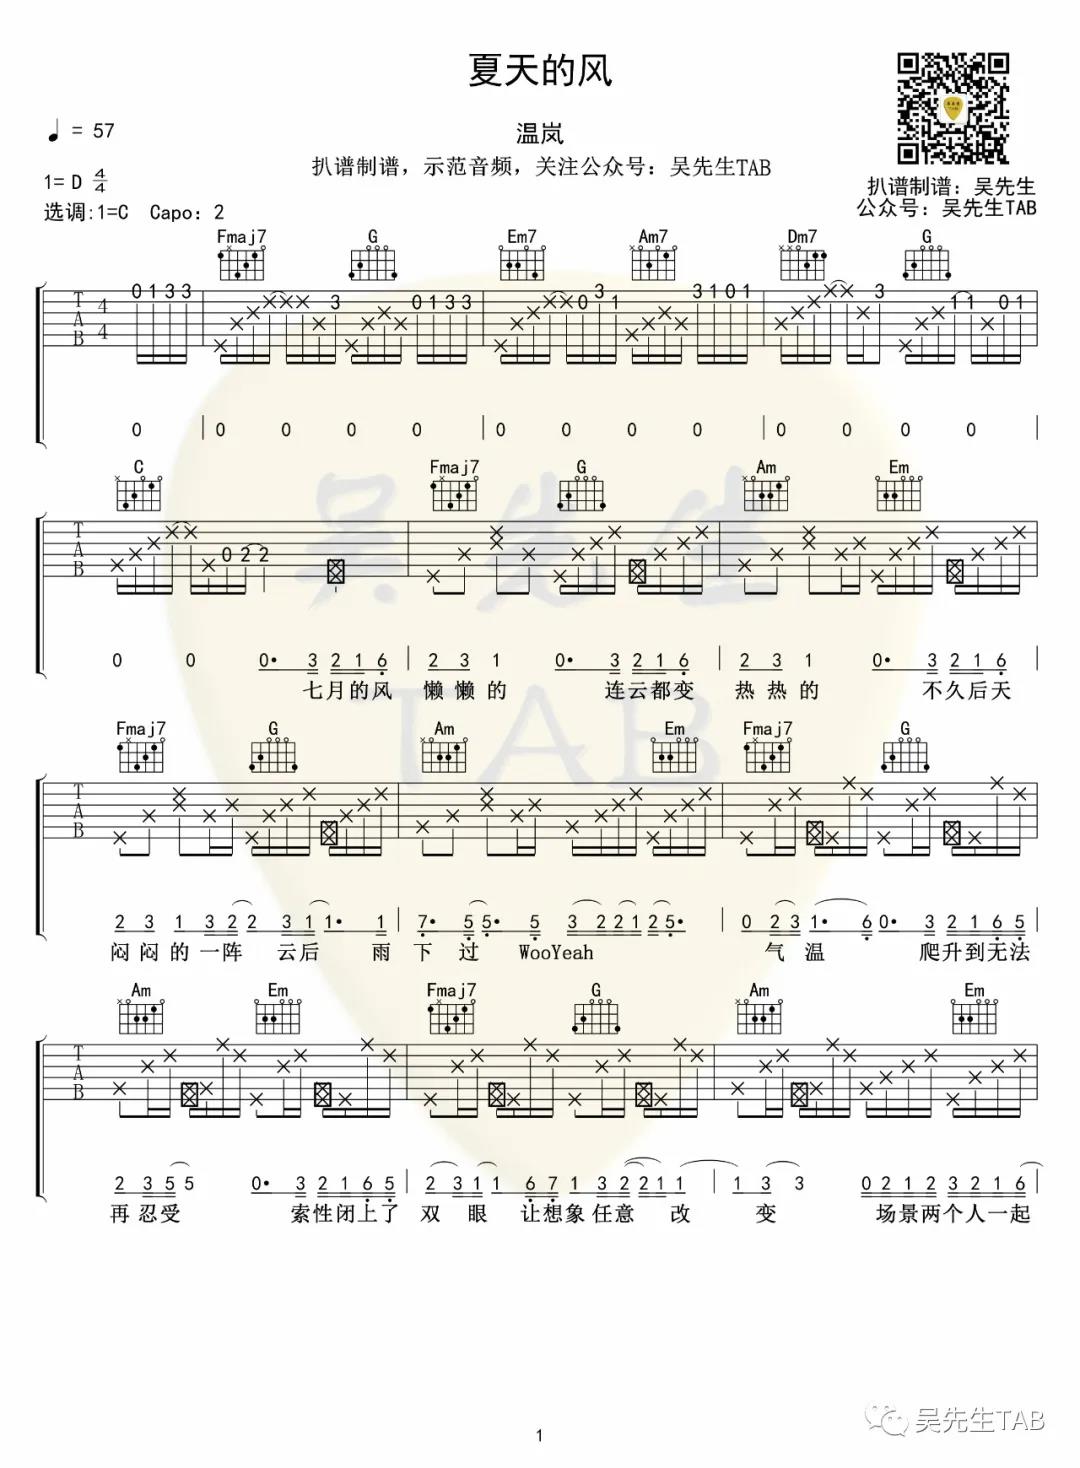 温岚《夏天的风》吉他谱(C调)-Guitar Music Score